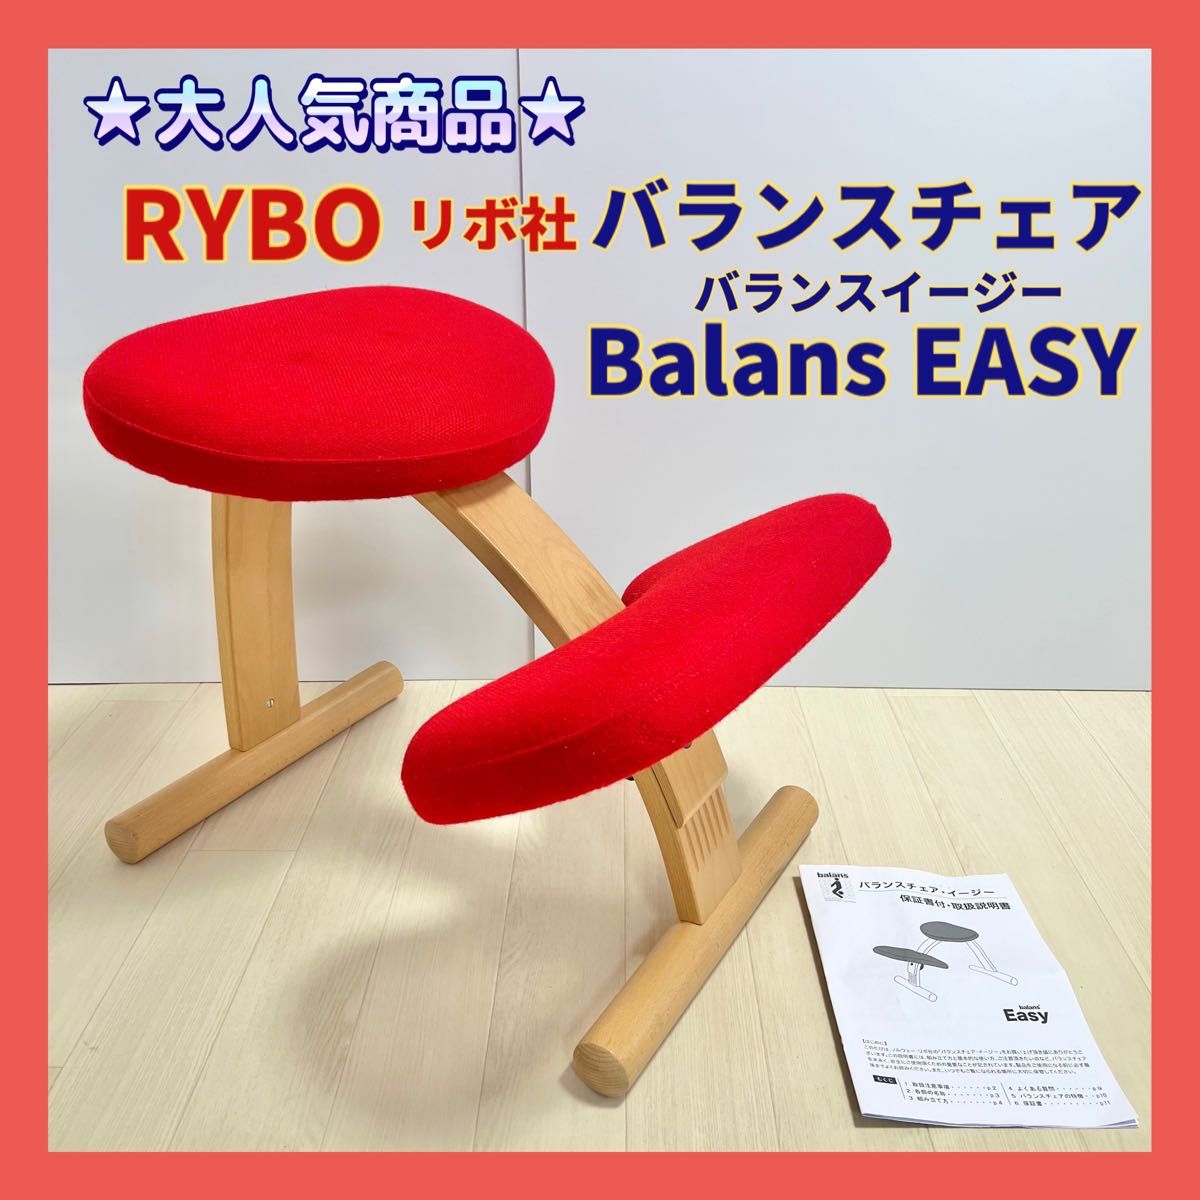 rybo リボ バランスチェア Balans EASY 赤レッド 姿勢矯正椅子-